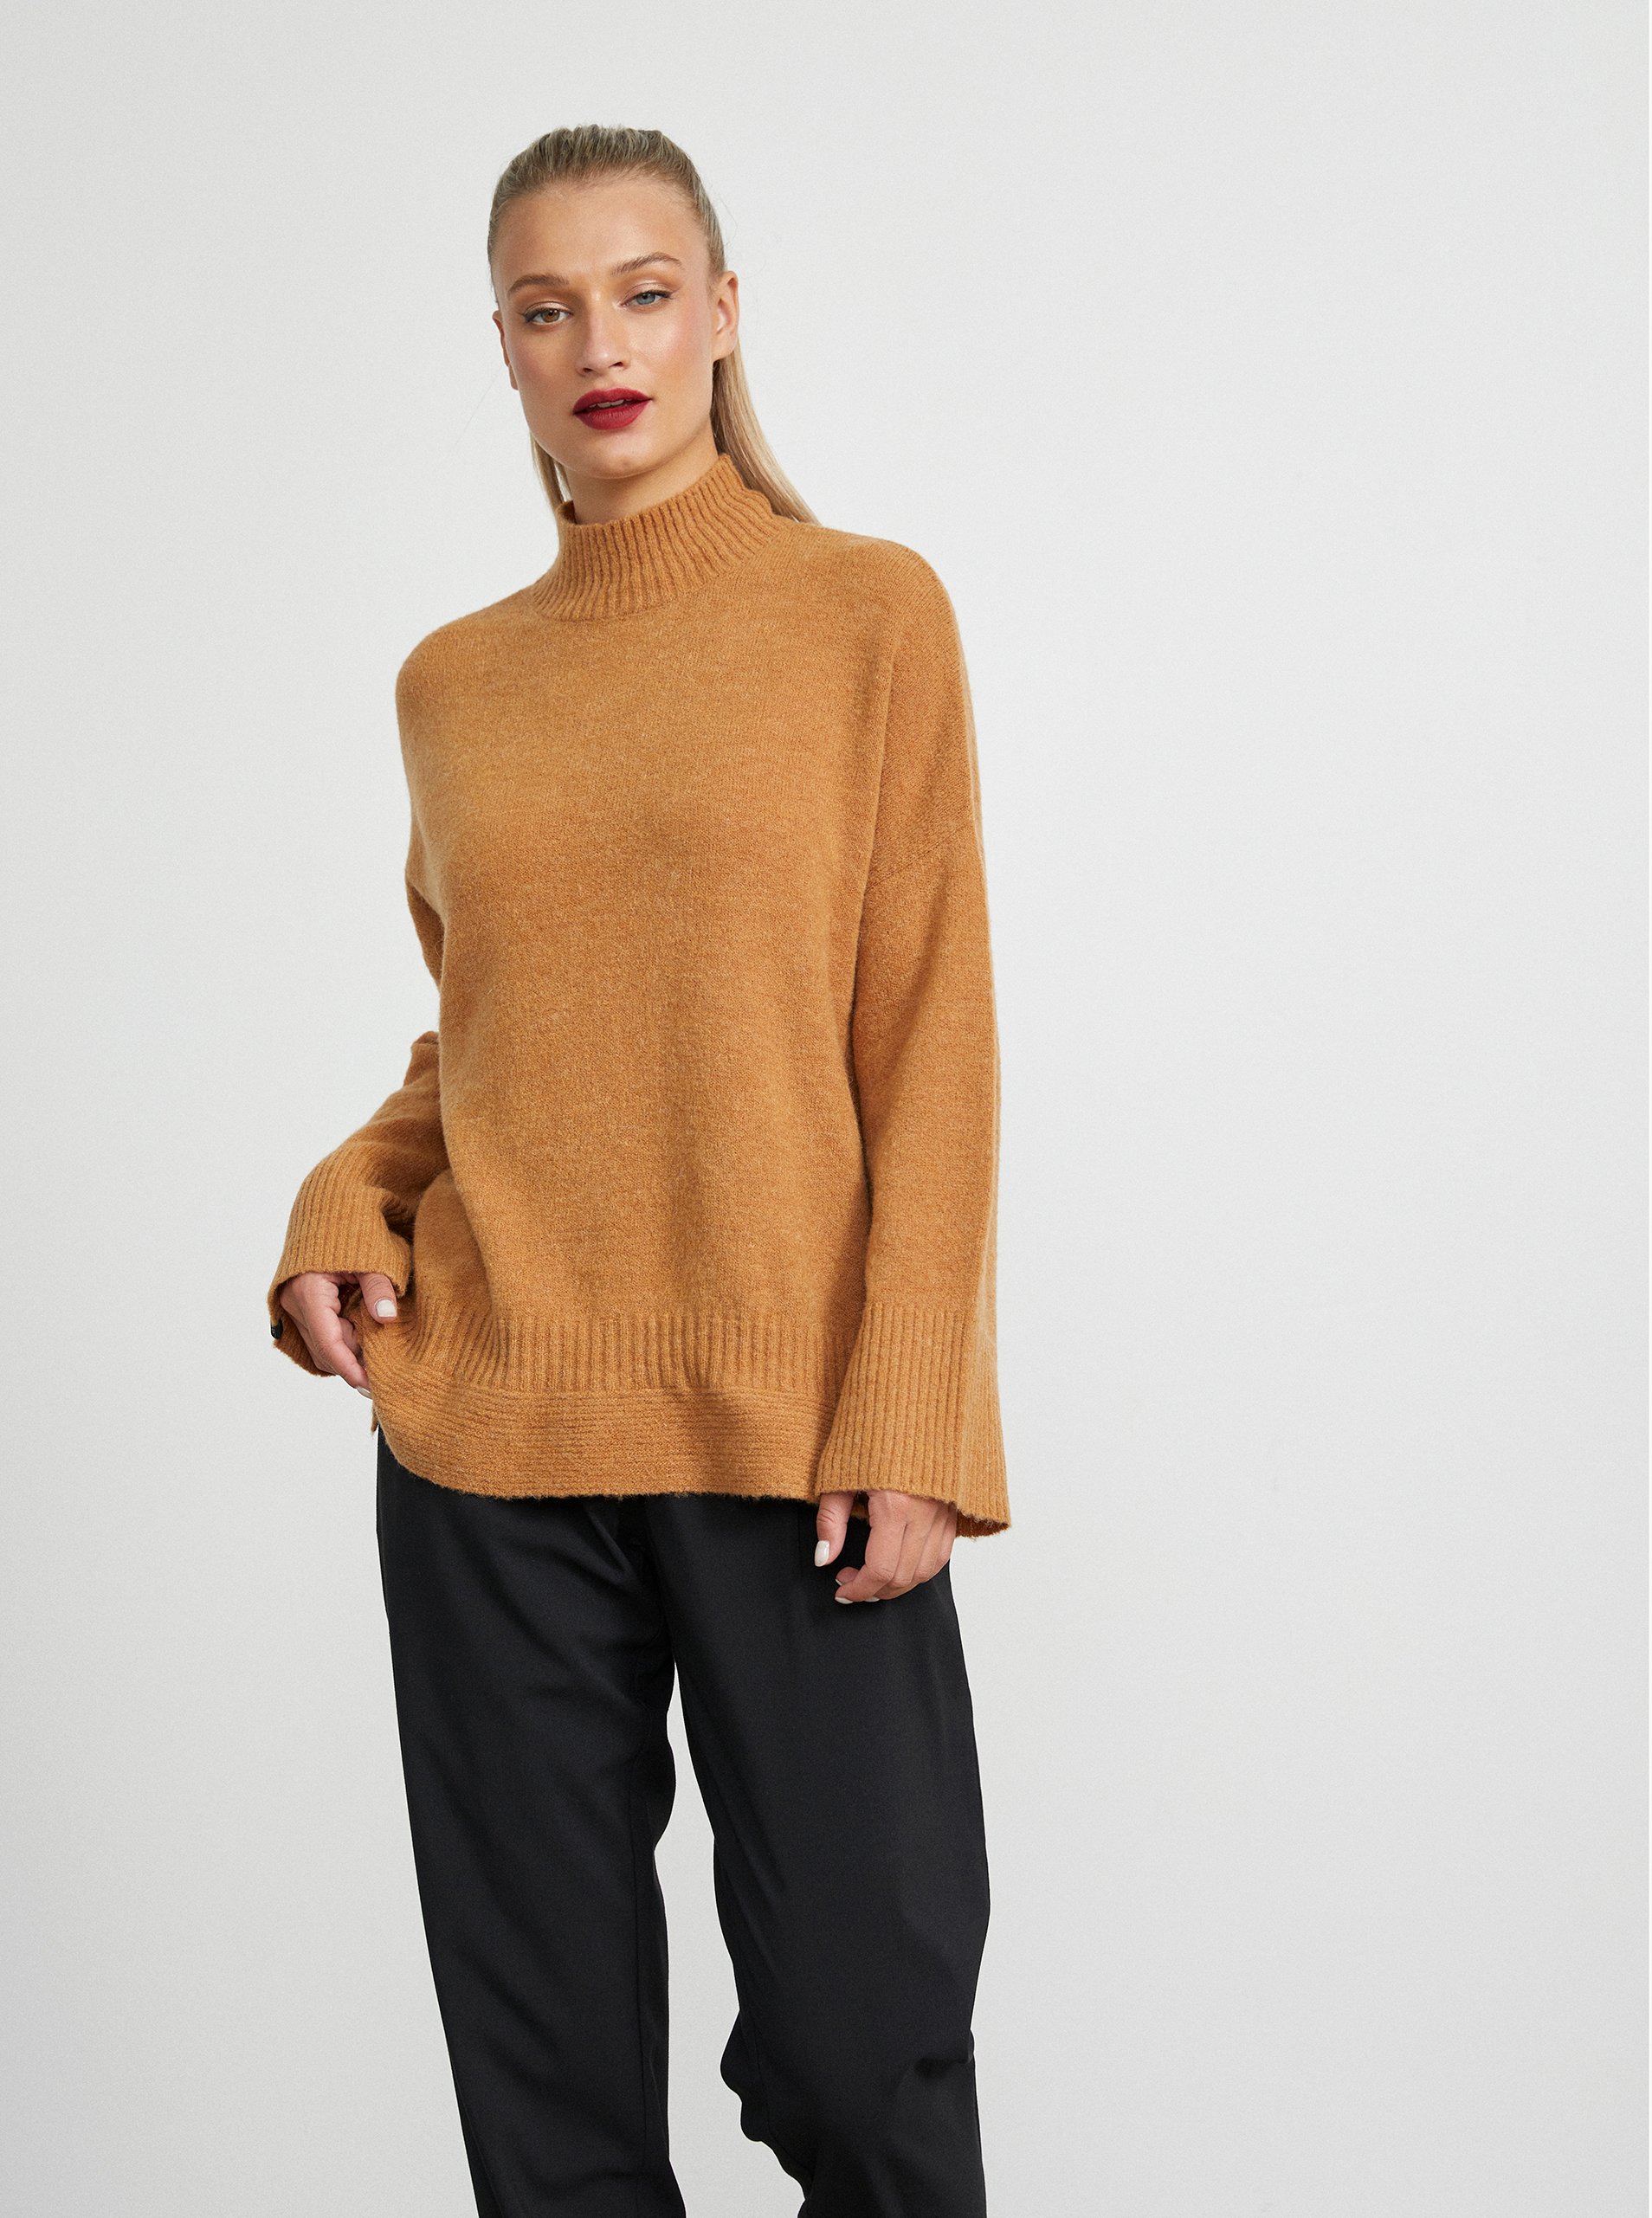 E-shop Hnědý dámský volný svetr s příměsí vlny METROOPOLIS by ZOOT.lab Belen